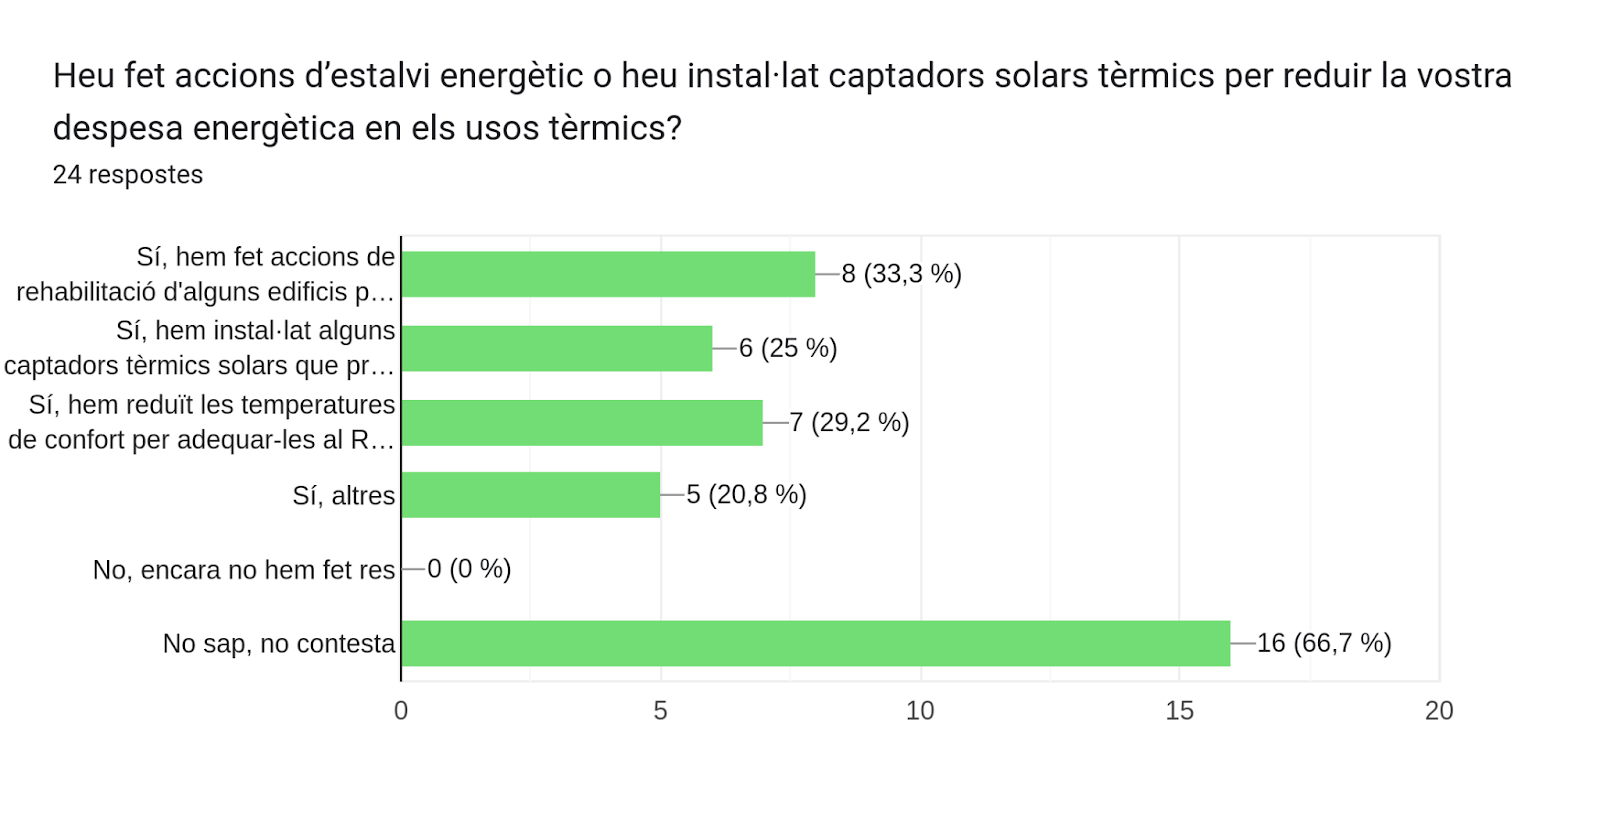 Gràfic de respostes de Formularis. Títol de la pregunta: Heu fet accions d’estalvi energètic o heu instal·lat captadors solars tèrmics per reduir la vostra despesa energètica en els usos tèrmics?. Nombre de respostes: 24 respostes.